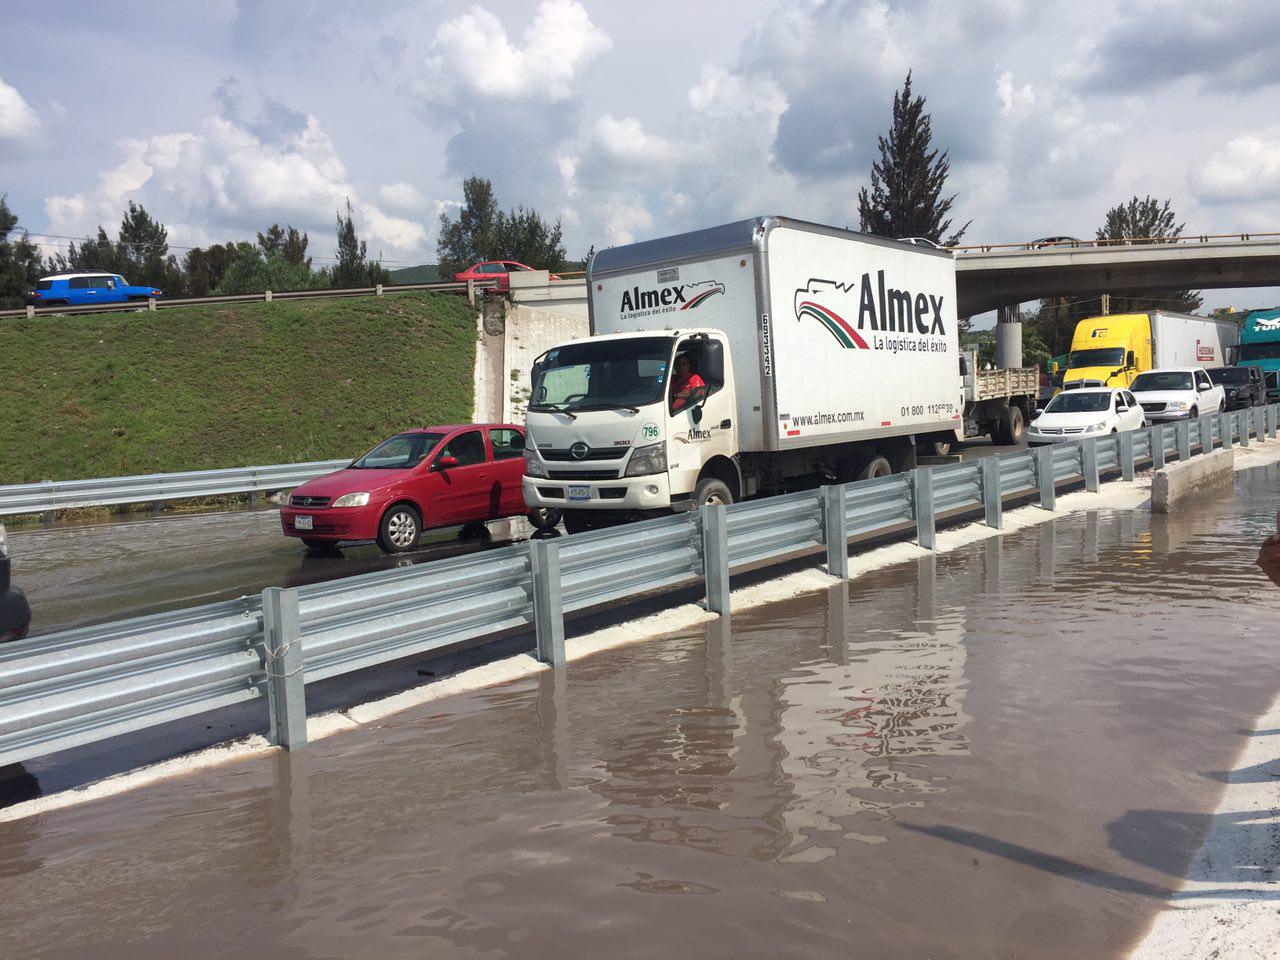  Basura y azolve, causa de afectaciones por lluvia en Santa Rosa Jáuregui: MAV